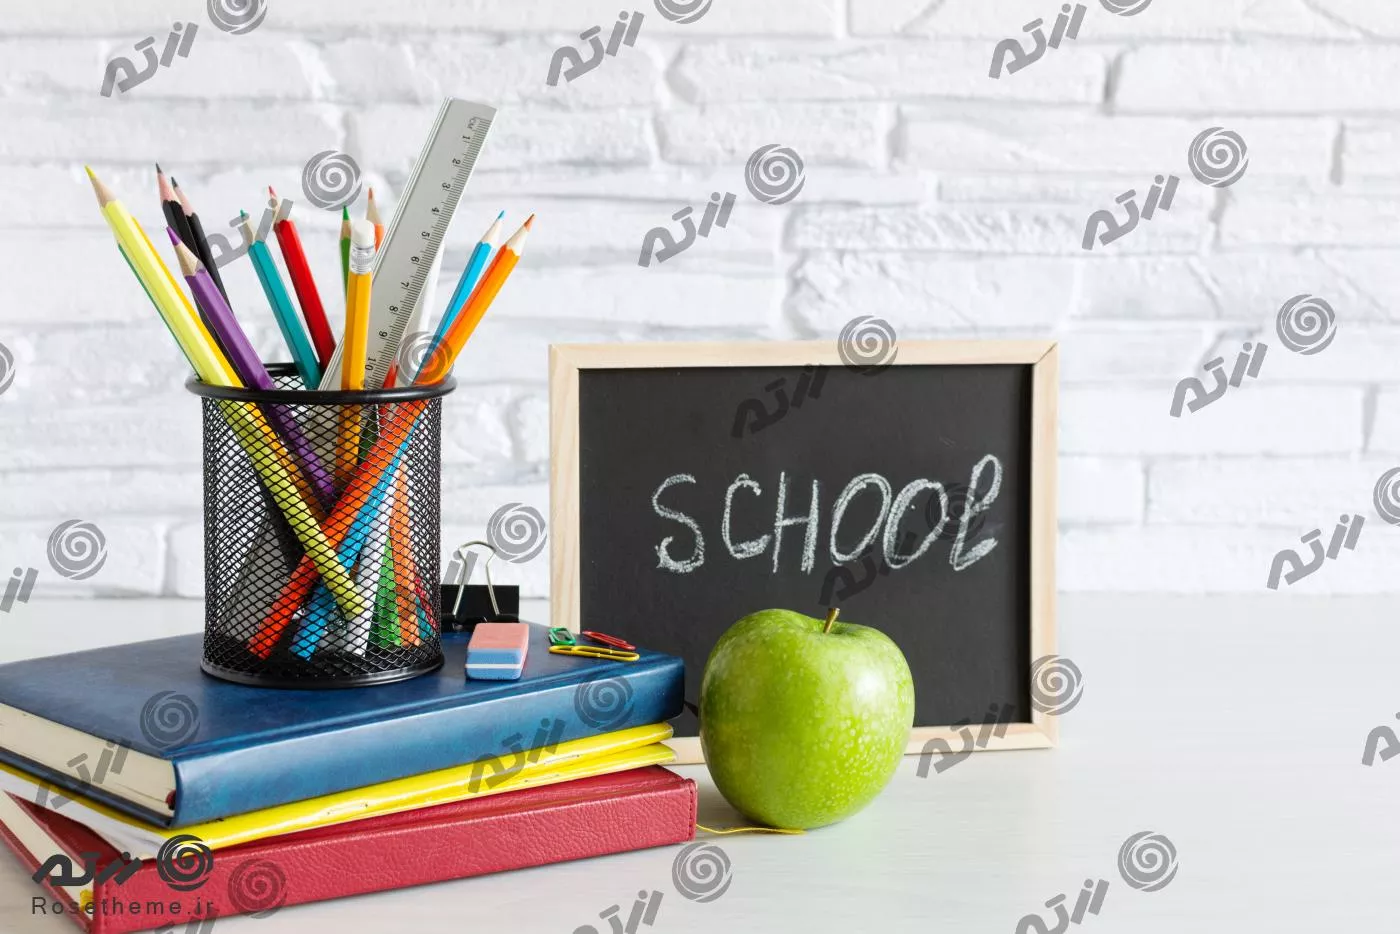 عکس رایگان JPG باکیفیت لوازم تحریر مدرسه شامل مداد و جامدادی و دفتر و کتاب و سیب سبز 22144